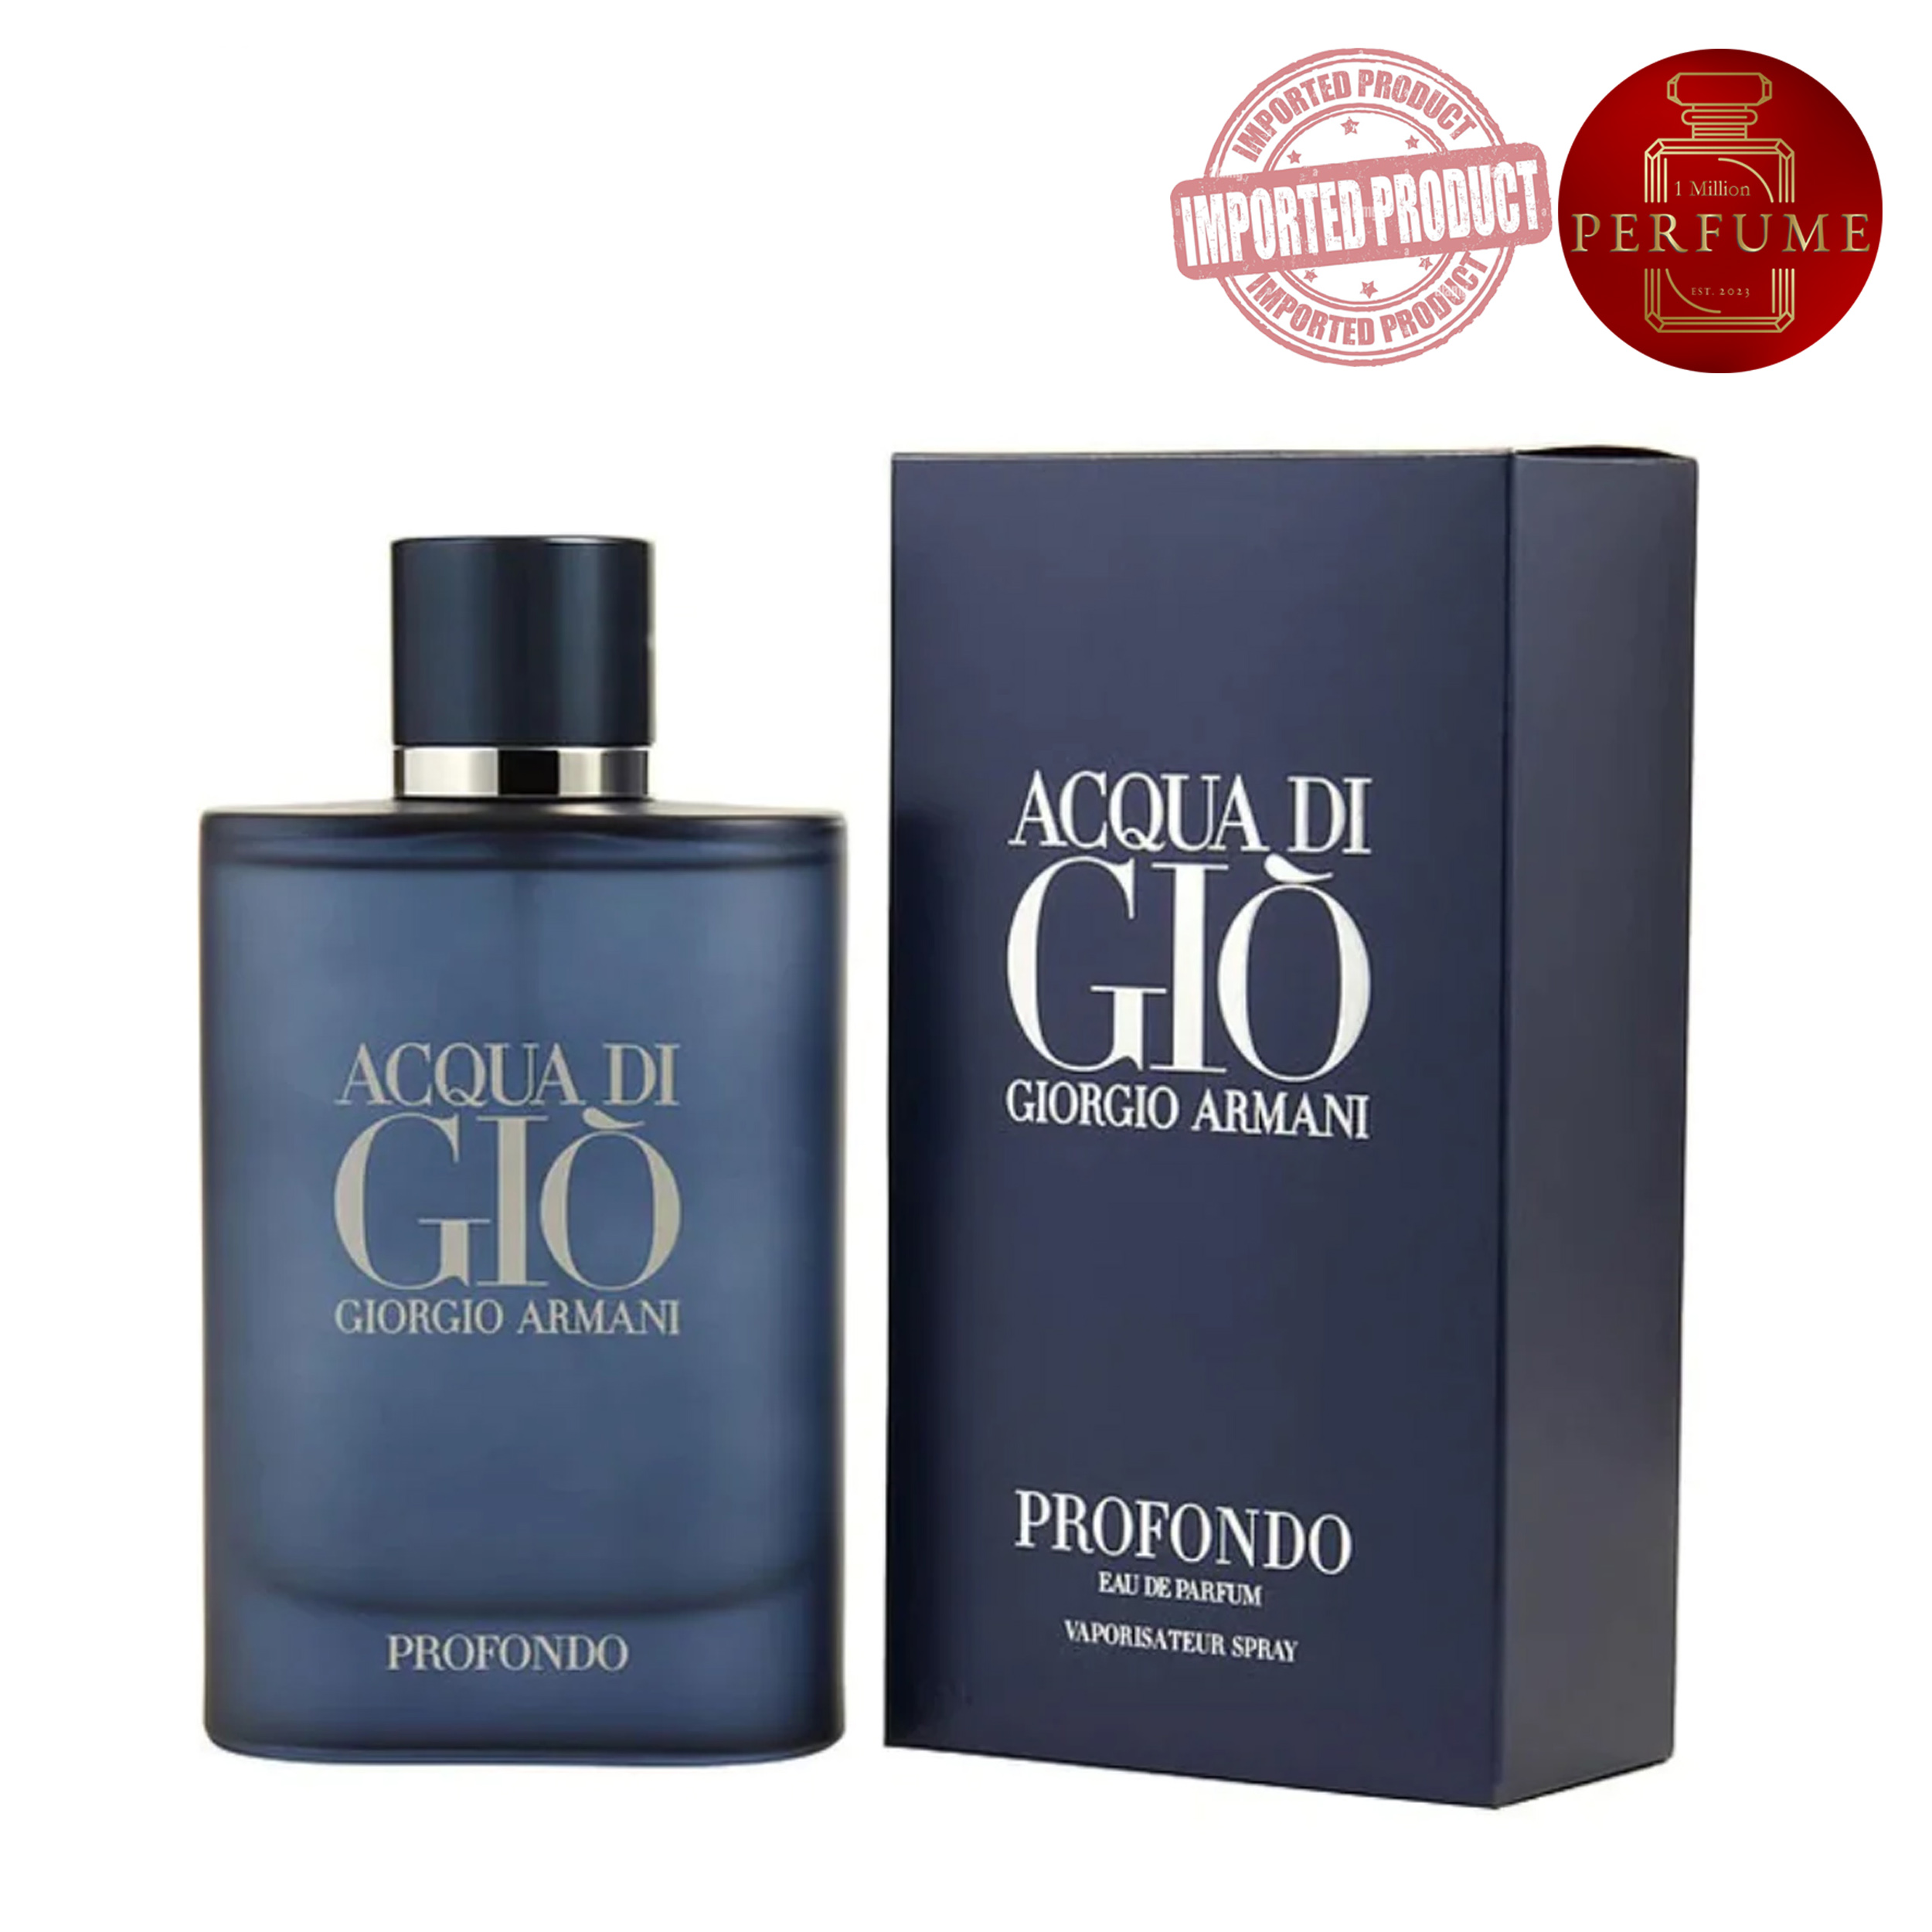 Acqua di Giò Profondo Giorgio Armani  (Perfume Replica Con Fragancia Importada)- Hombre